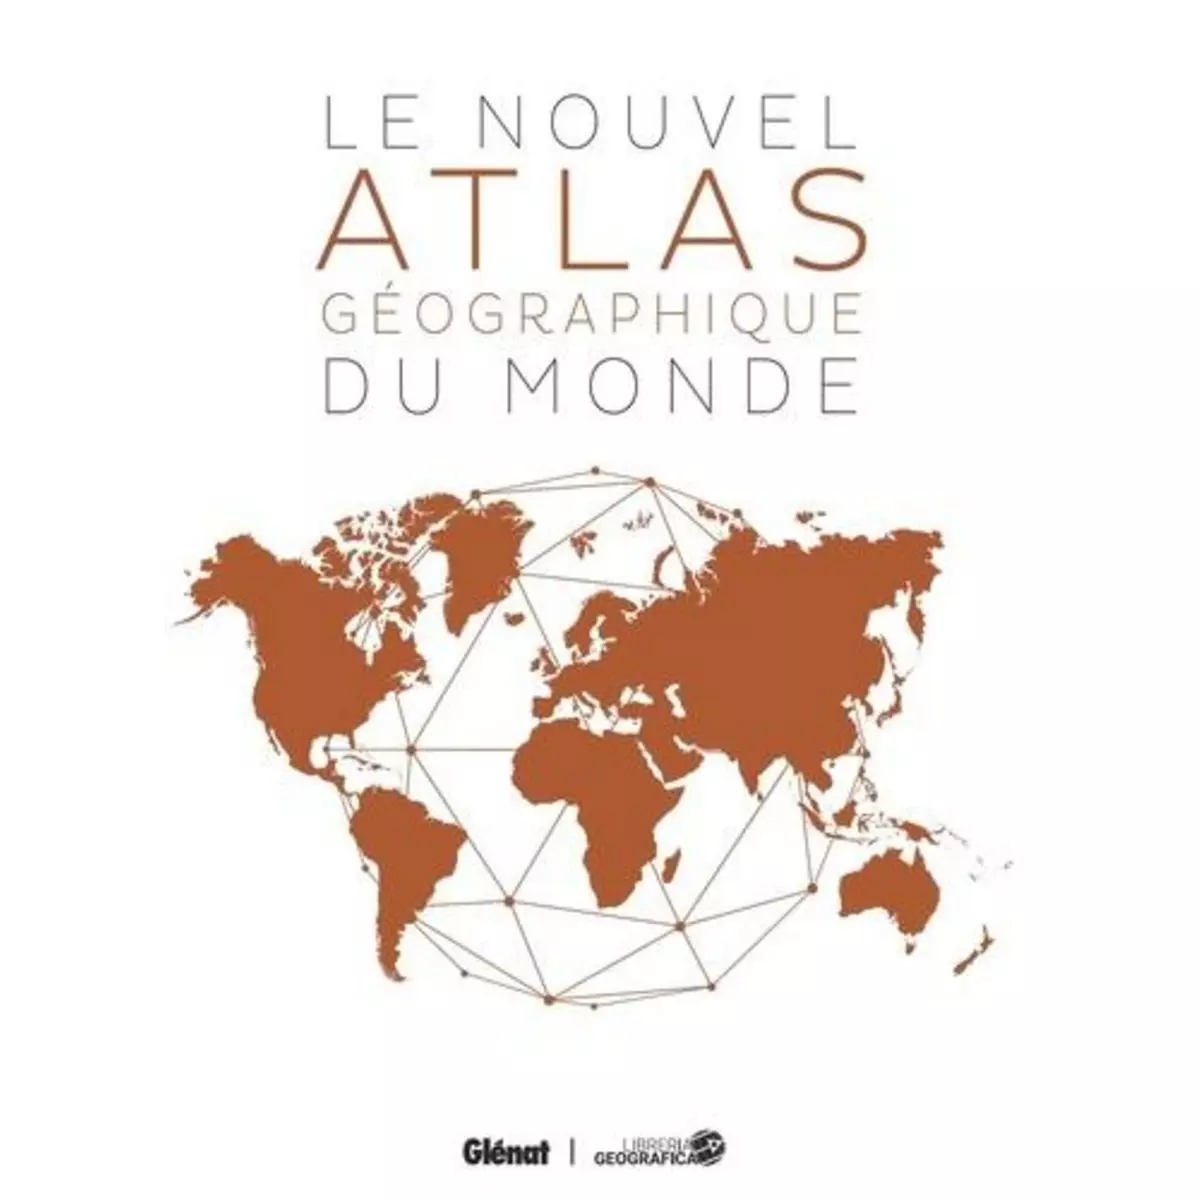  LE NOUVEL ATLAS GEOGRAPHIQUE DU MONDE. 4E EDITION, Libreria Geografica